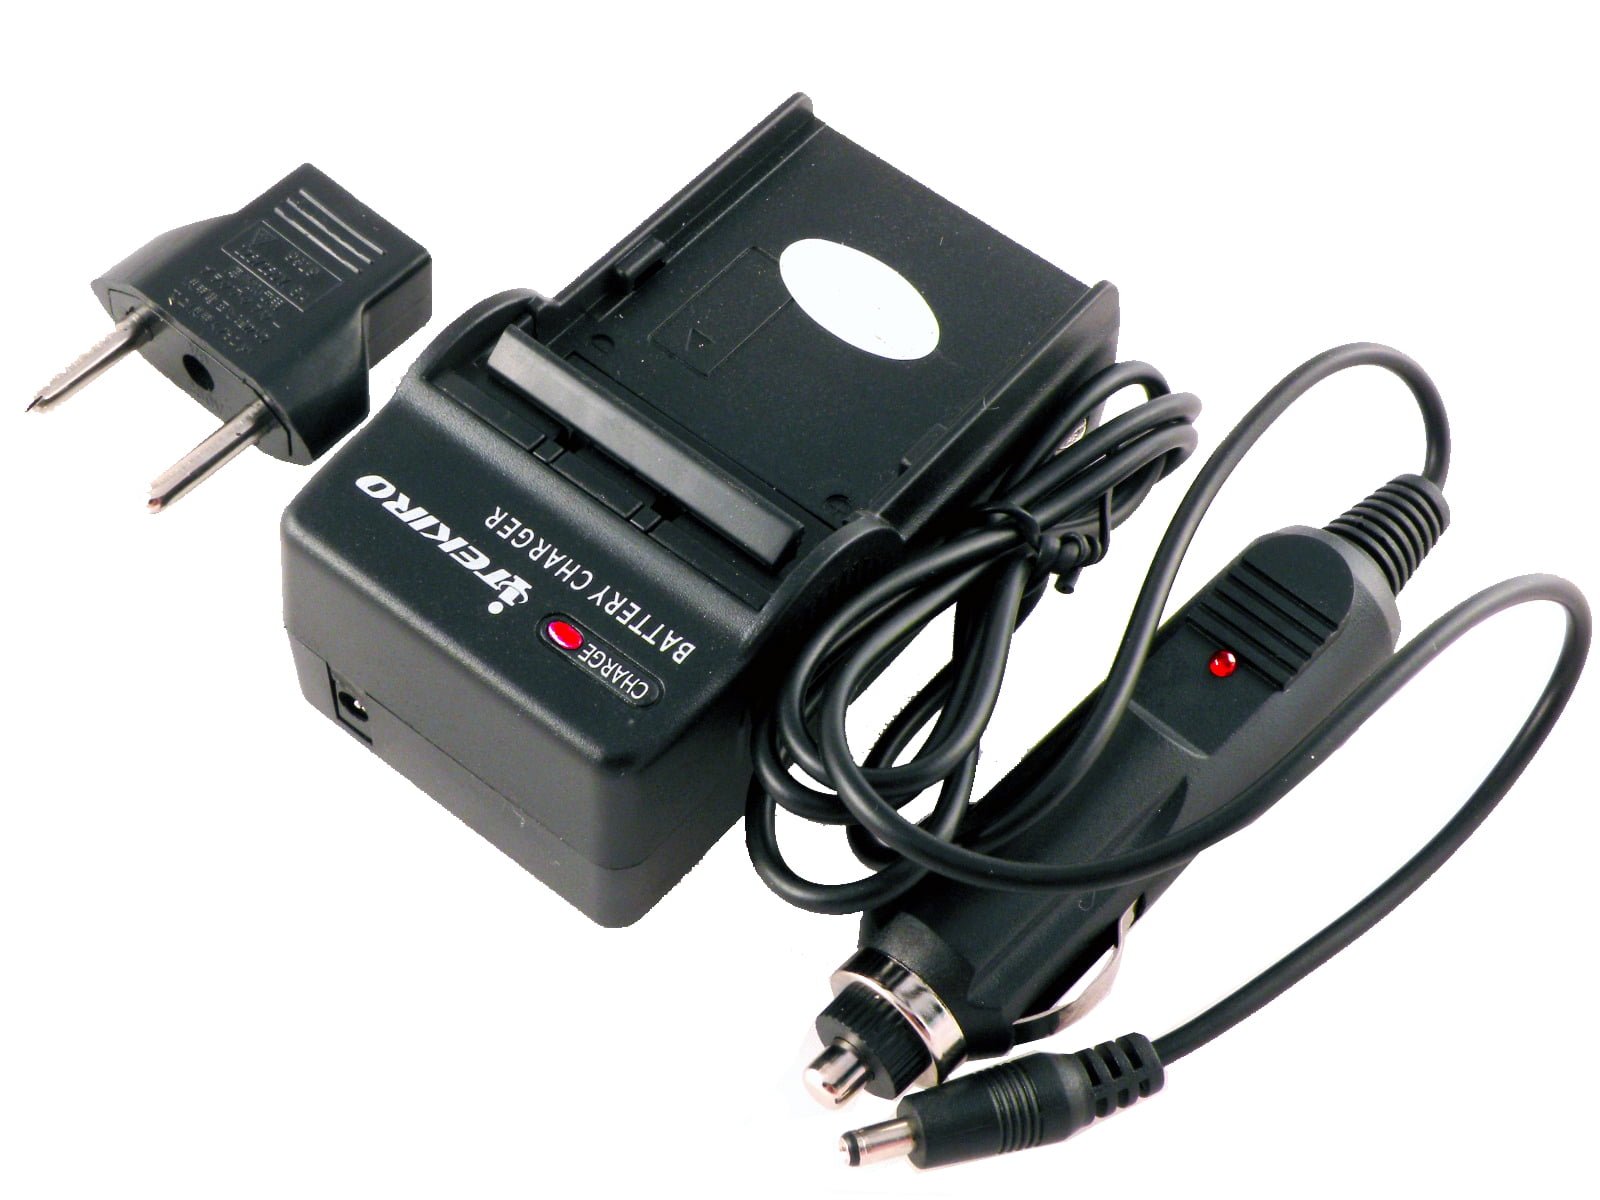 USB Battery Charger for Samsung VP-D10i VP-D11i VP-D15i Digital Video Camcorder